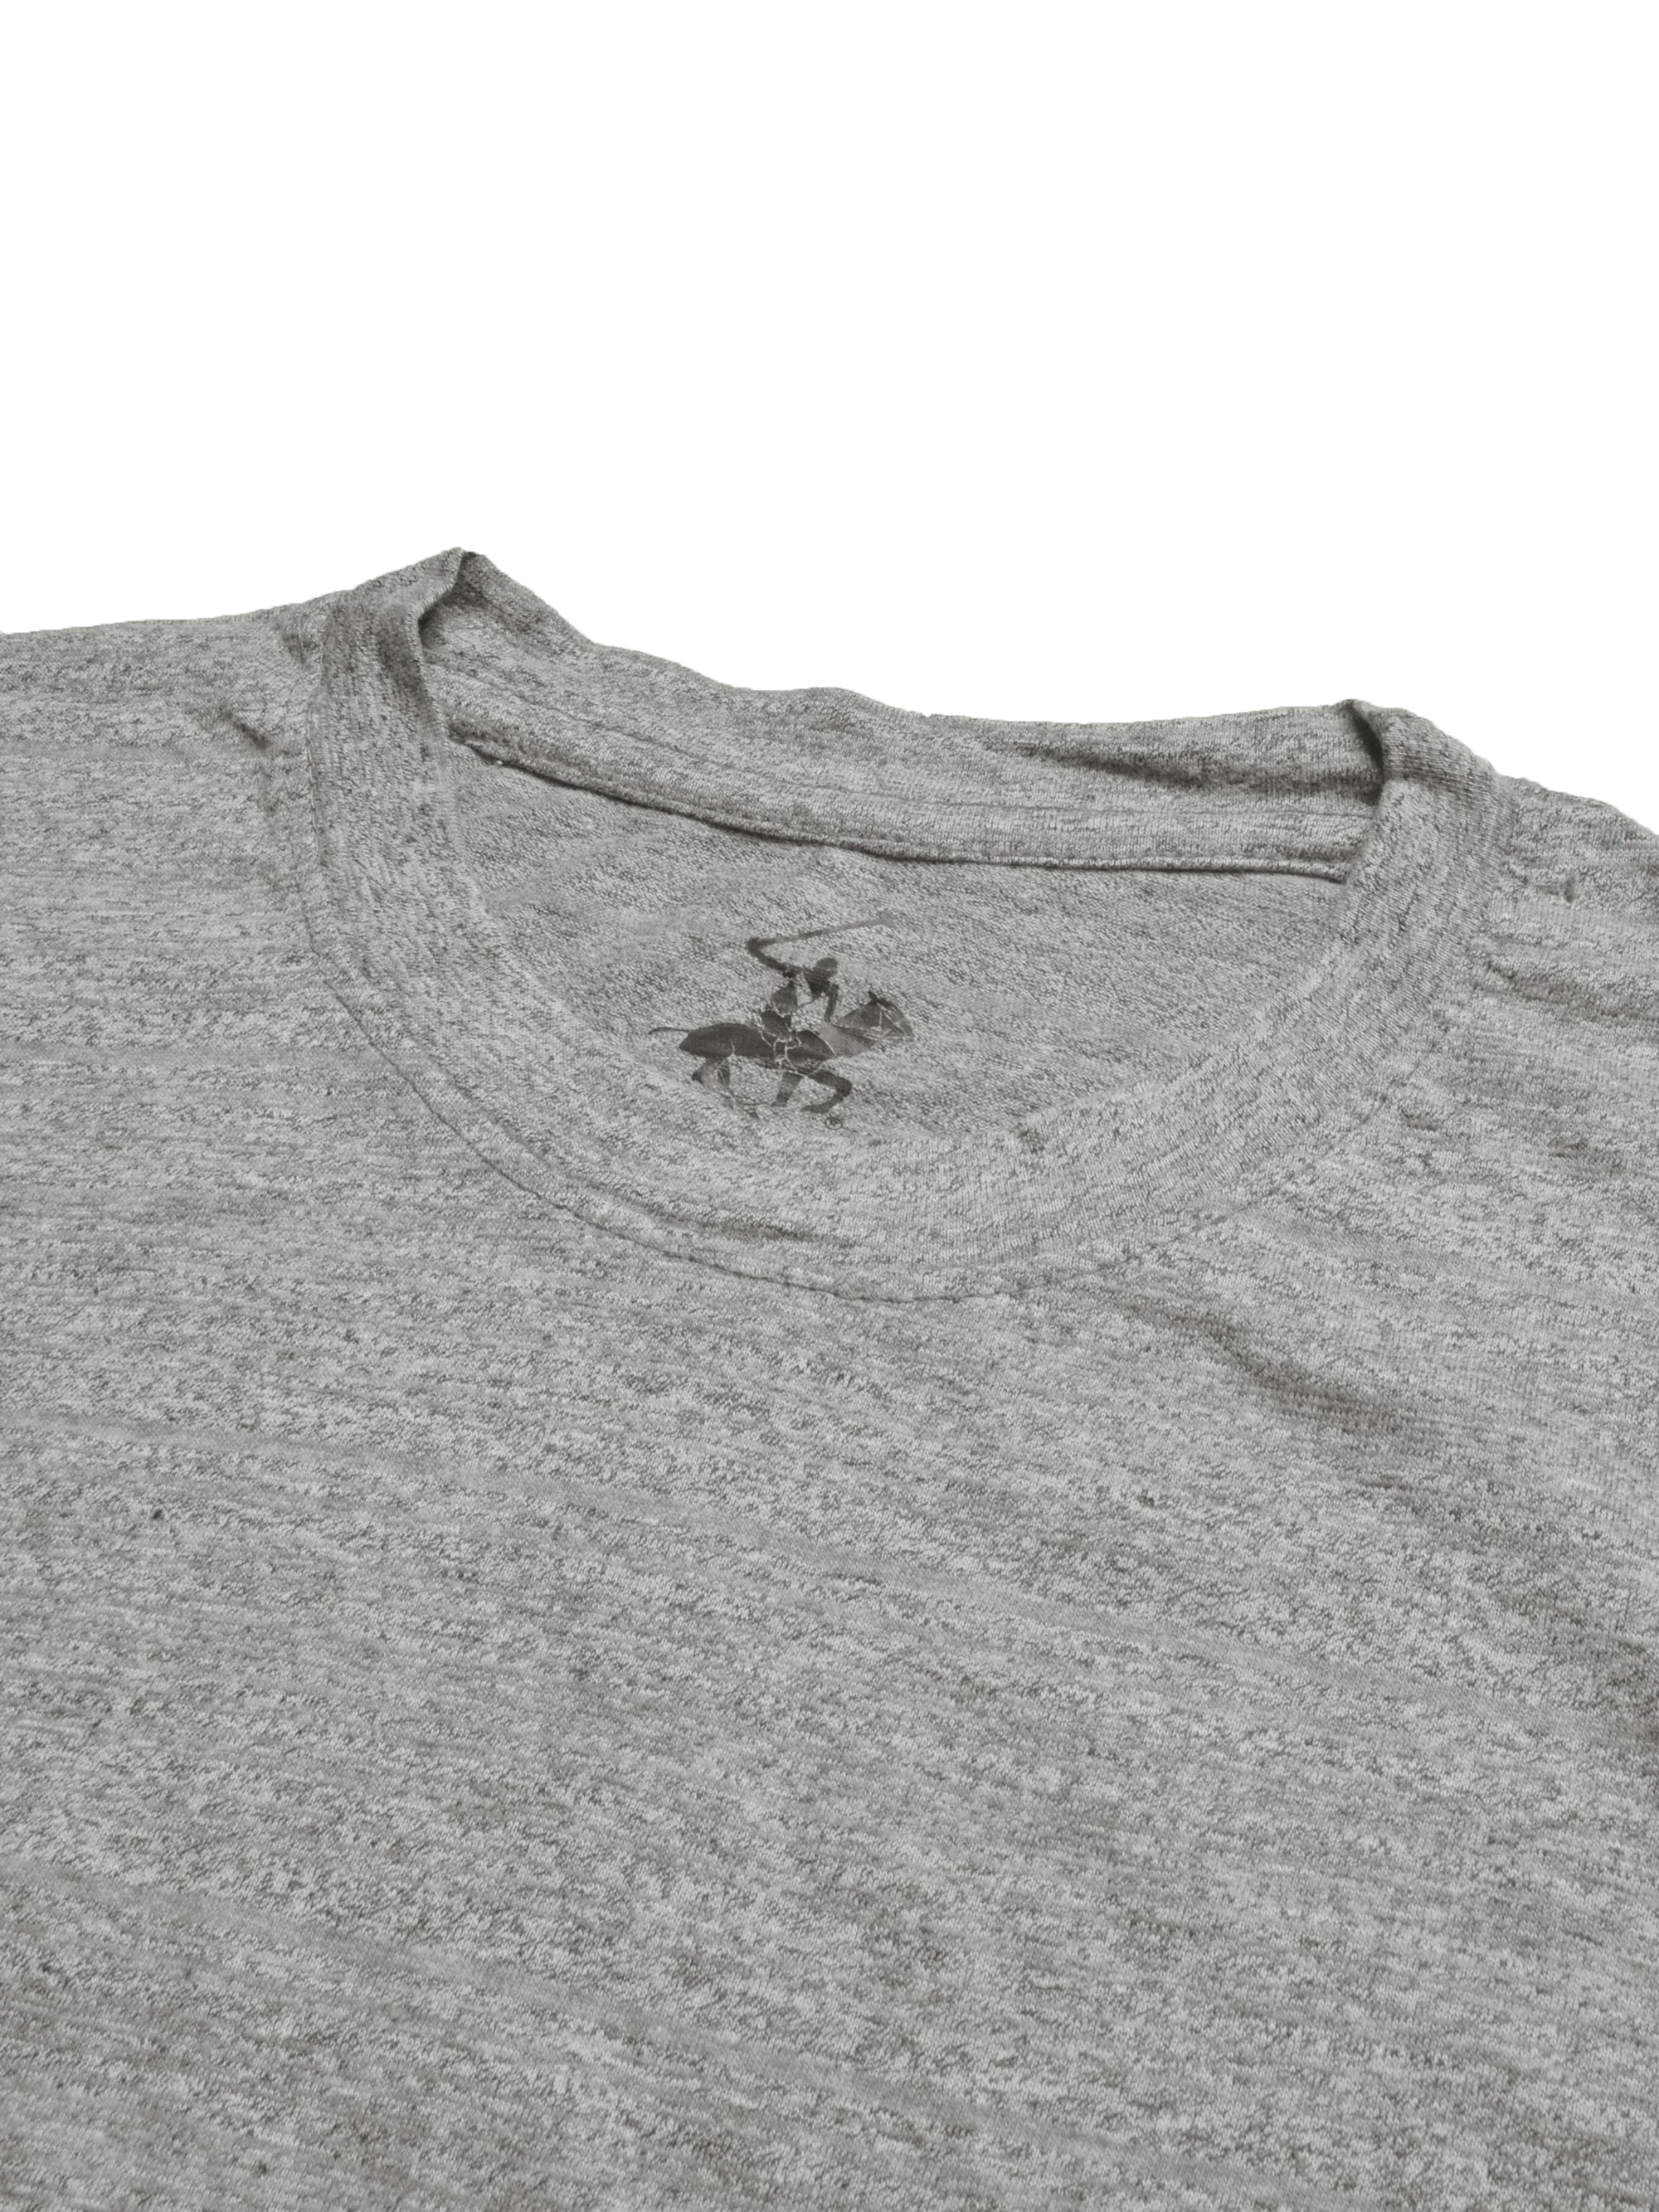 Beverly Hills Crew Neck Half Sleeve Tee Shirt For Men-Grey Melange-SP1834